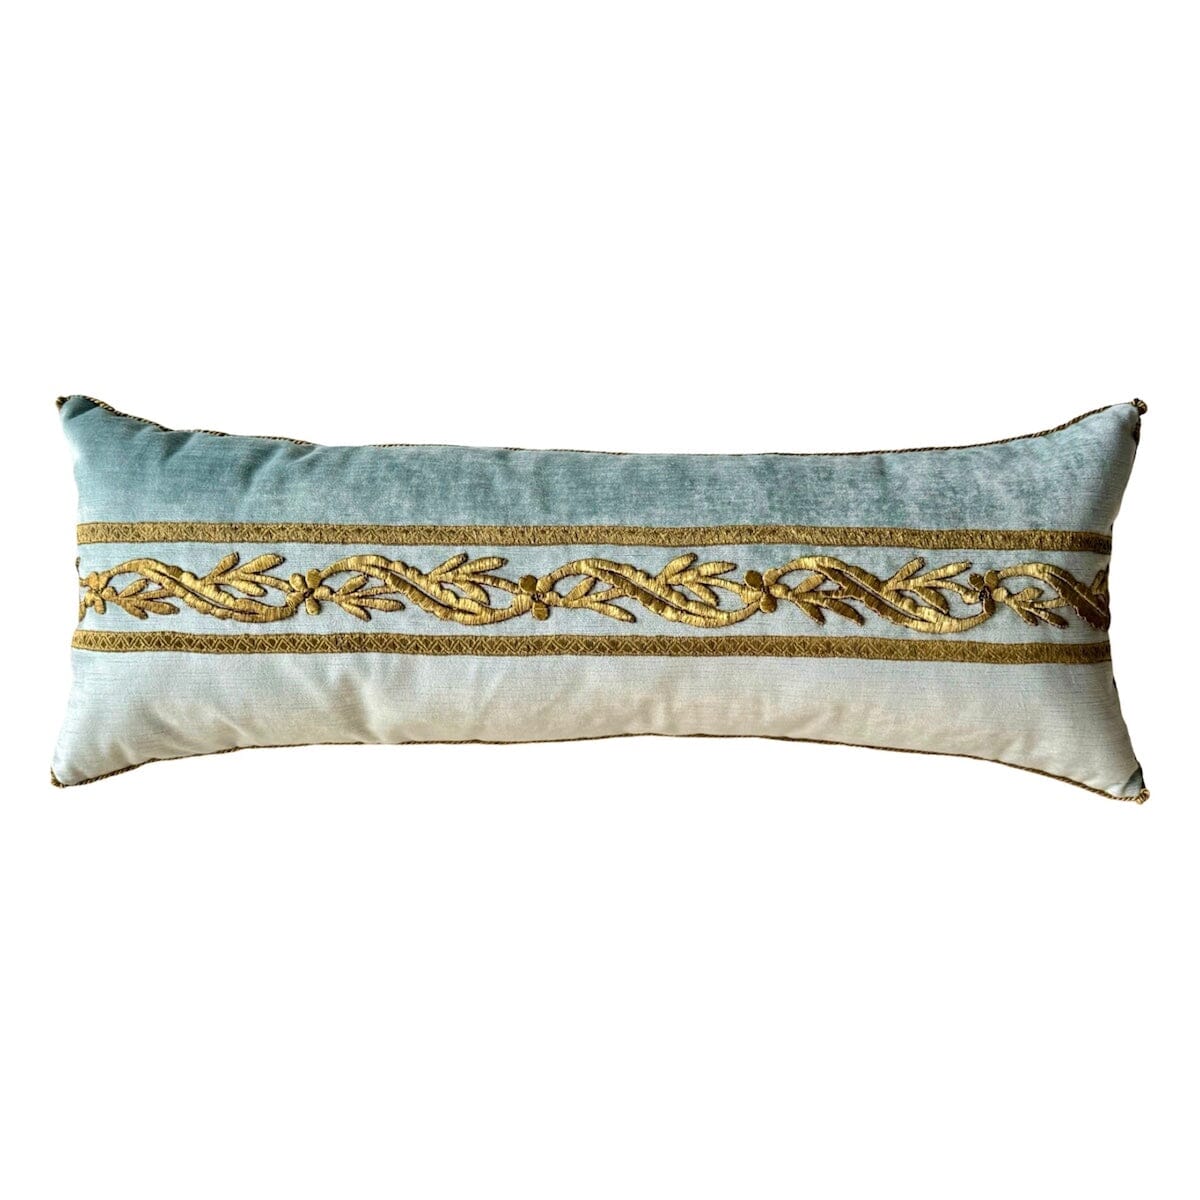 Antique Ottoman Empire Gold Metallic Embroidery (#E040224 | 12 x 32") New Pillows B. Viz Design 